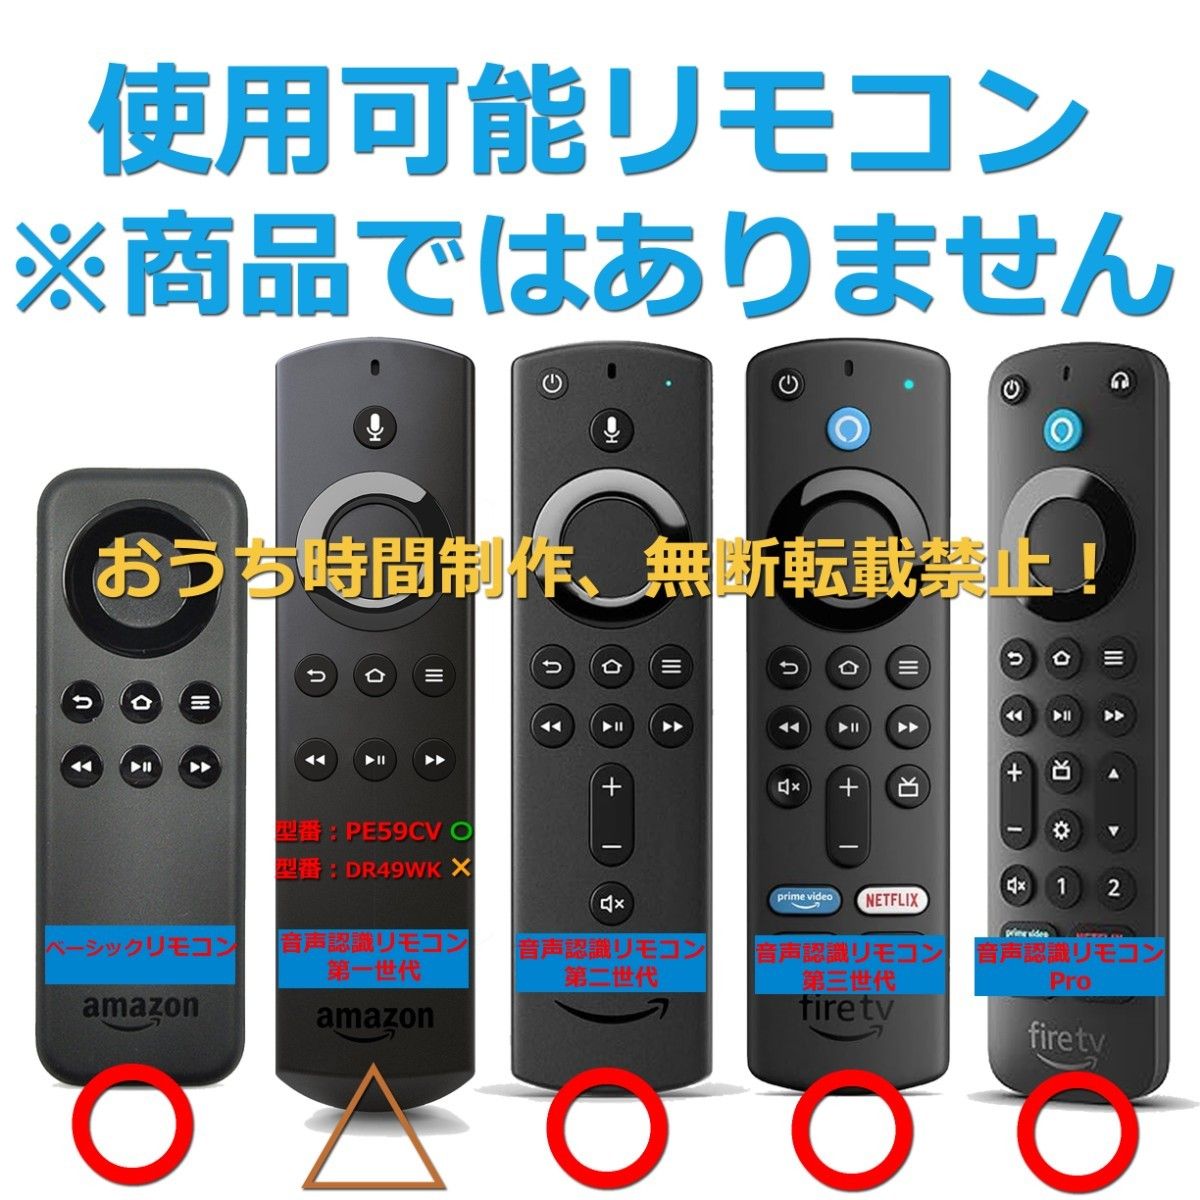 ①Fire TV Stick 4K MAX本体